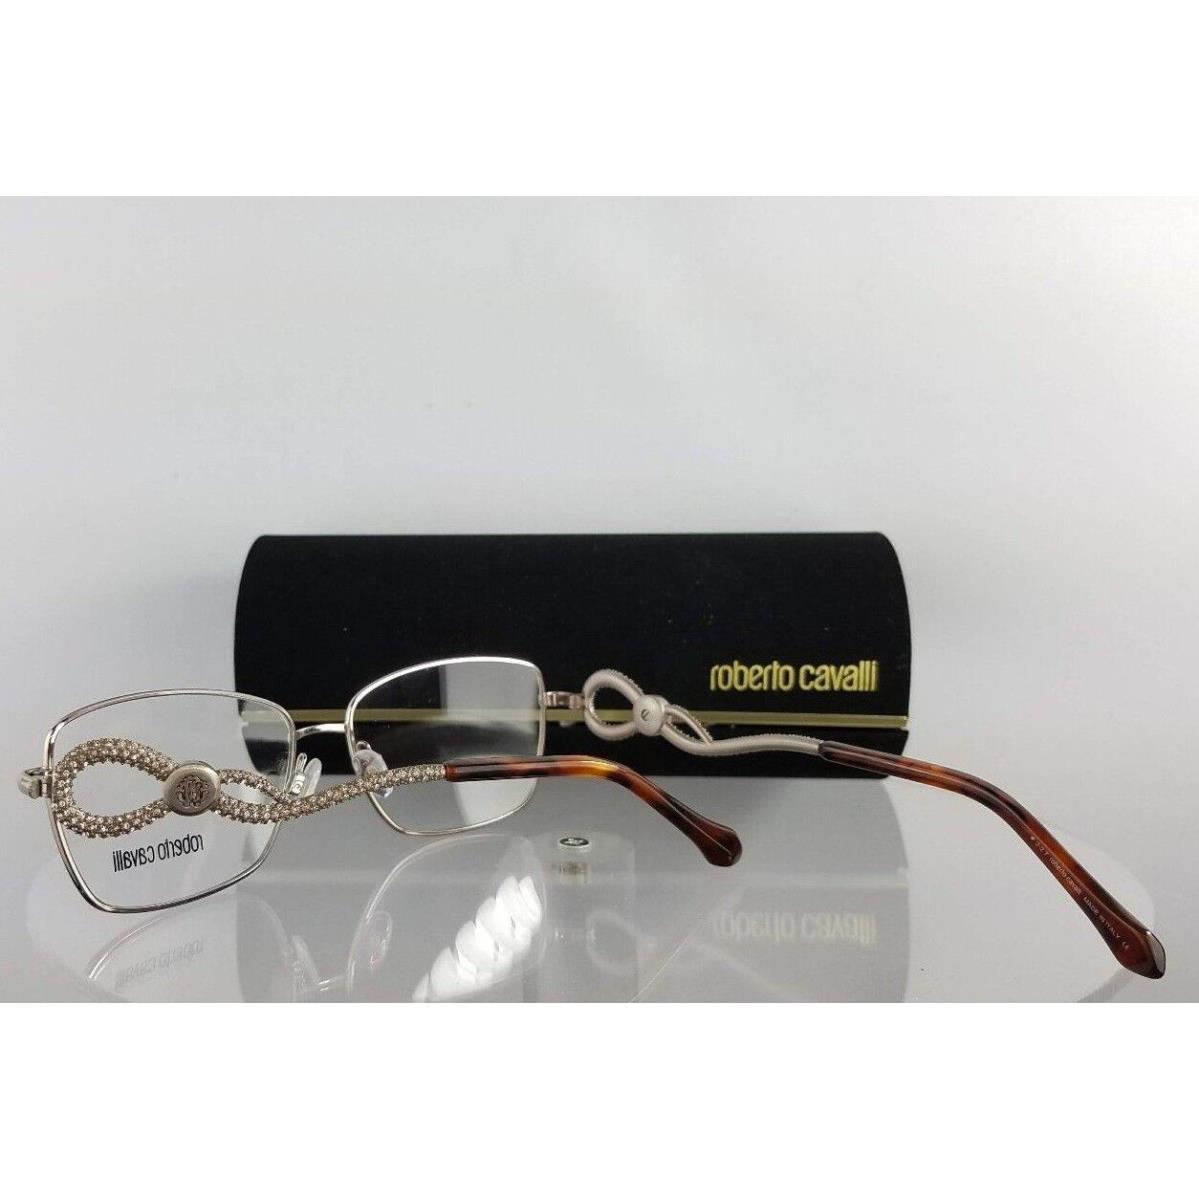 Roberto Cavalli eyeglasses  - Silver/tortoise Frame, Clear Lens 4